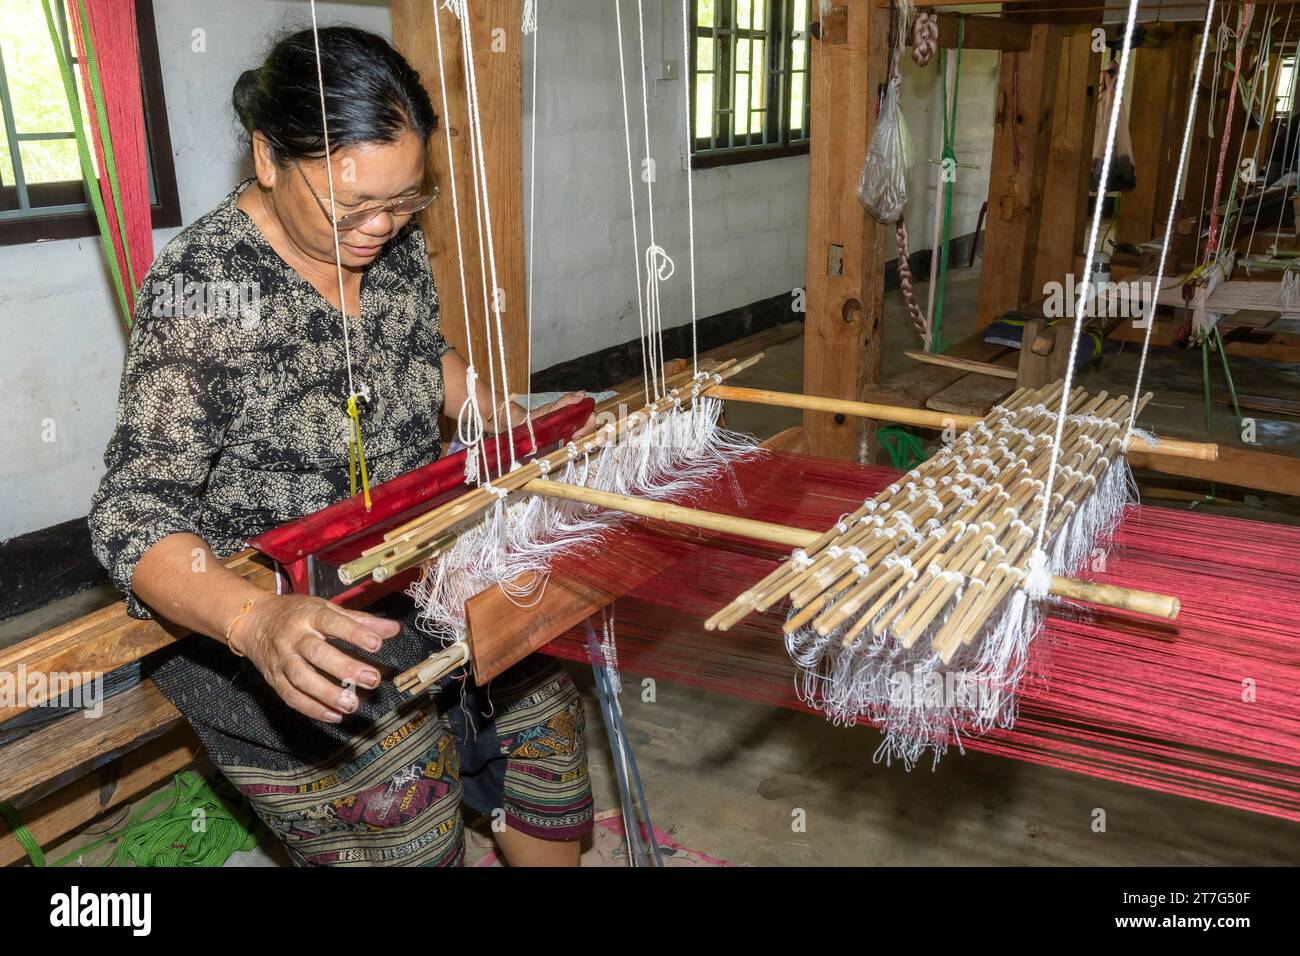 Ferme et usine de soie biologique, femme tressant des soies, Phonsavan, province de Xiangkhouang, Laos, Asie du Sud-est, Asie Banque D'Images